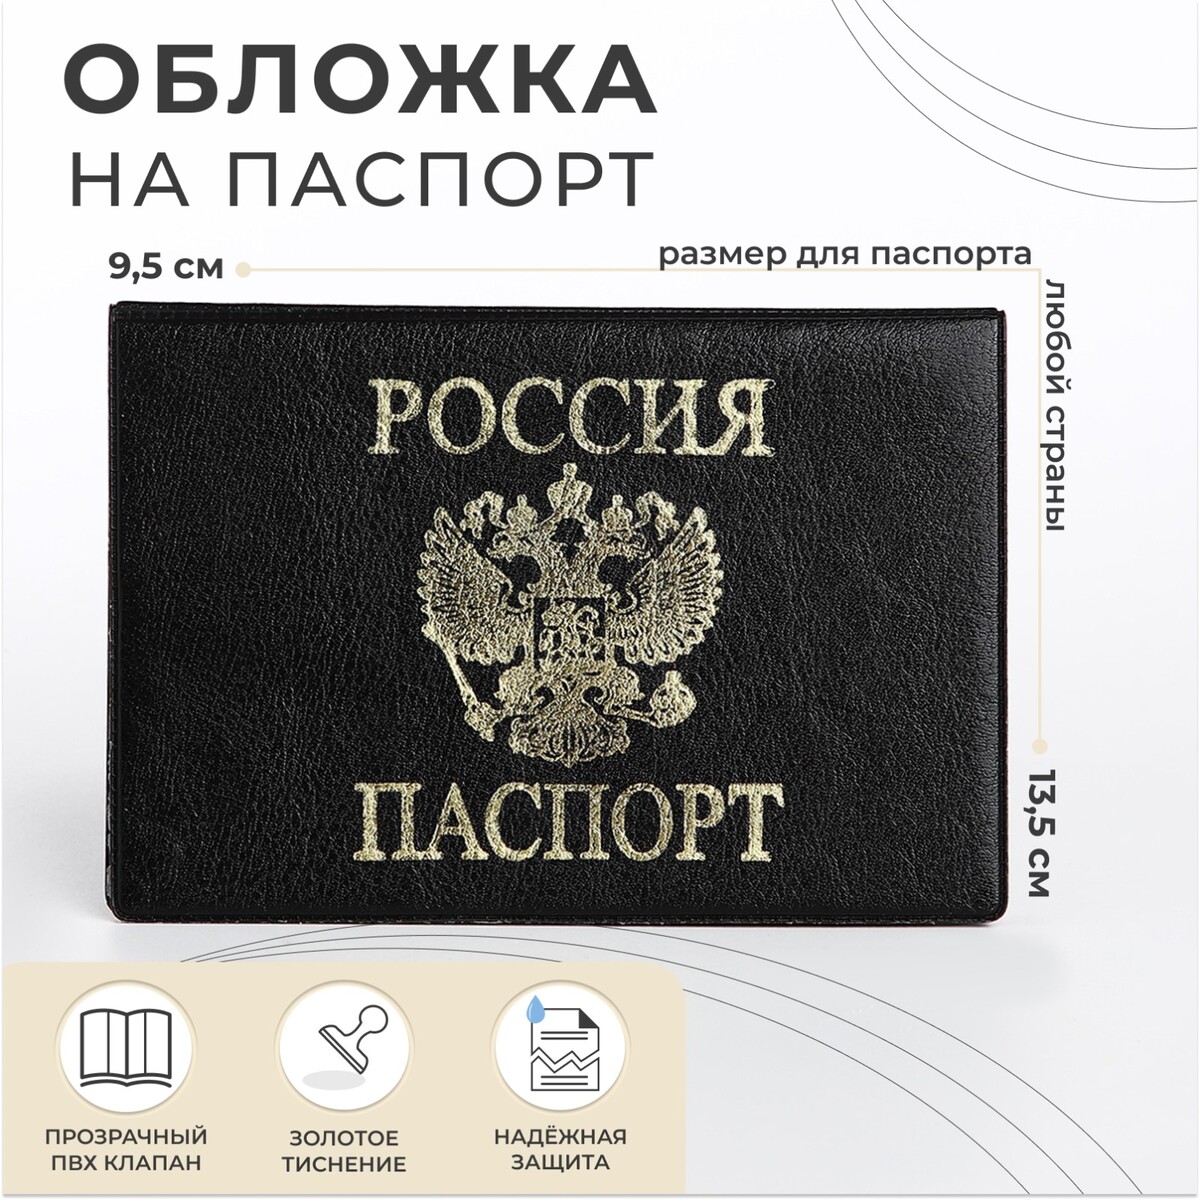 Обложка для паспорта 9,5*0,5*13,5, тисн золото, б/уг, No brand, цвет черный